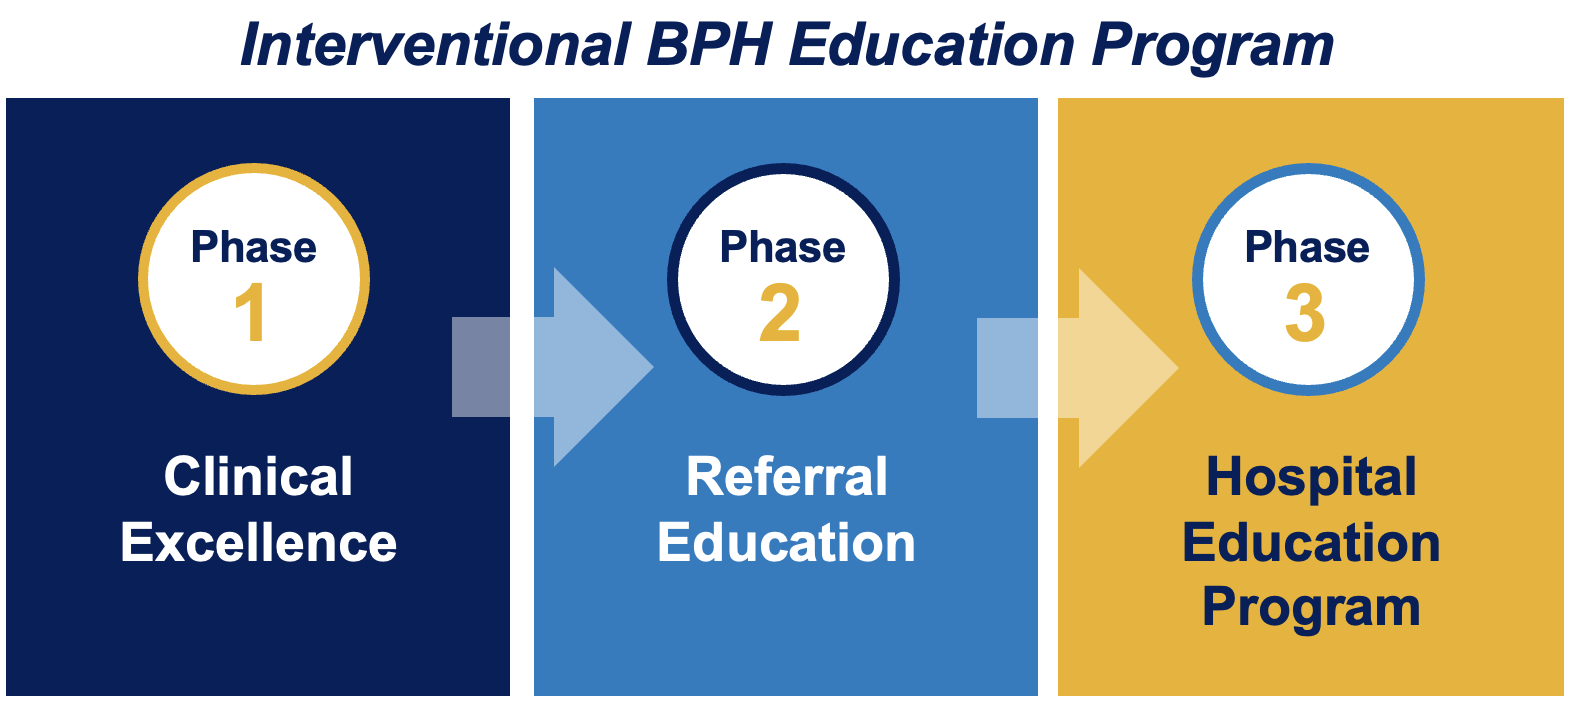 Interventional BPH Education Program